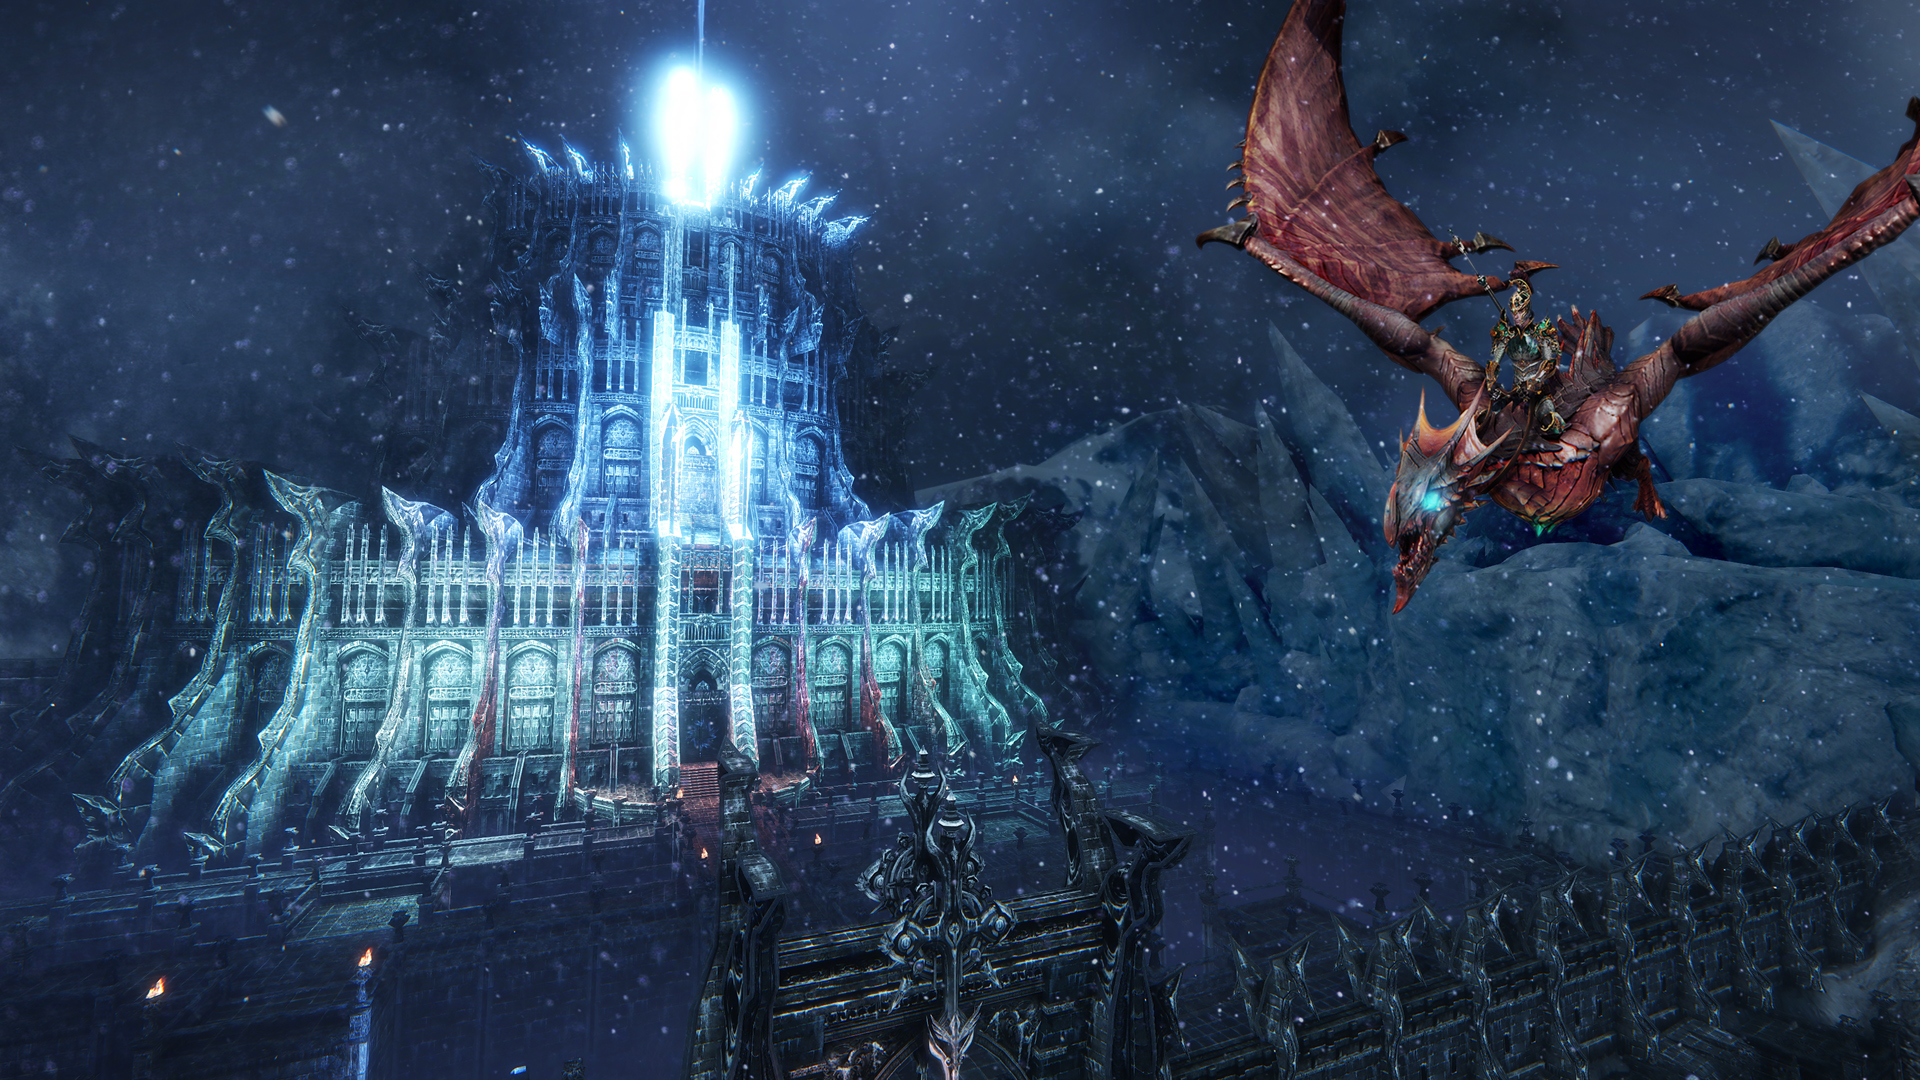 Riders of Icarus: Elite Riders Pack screenshot